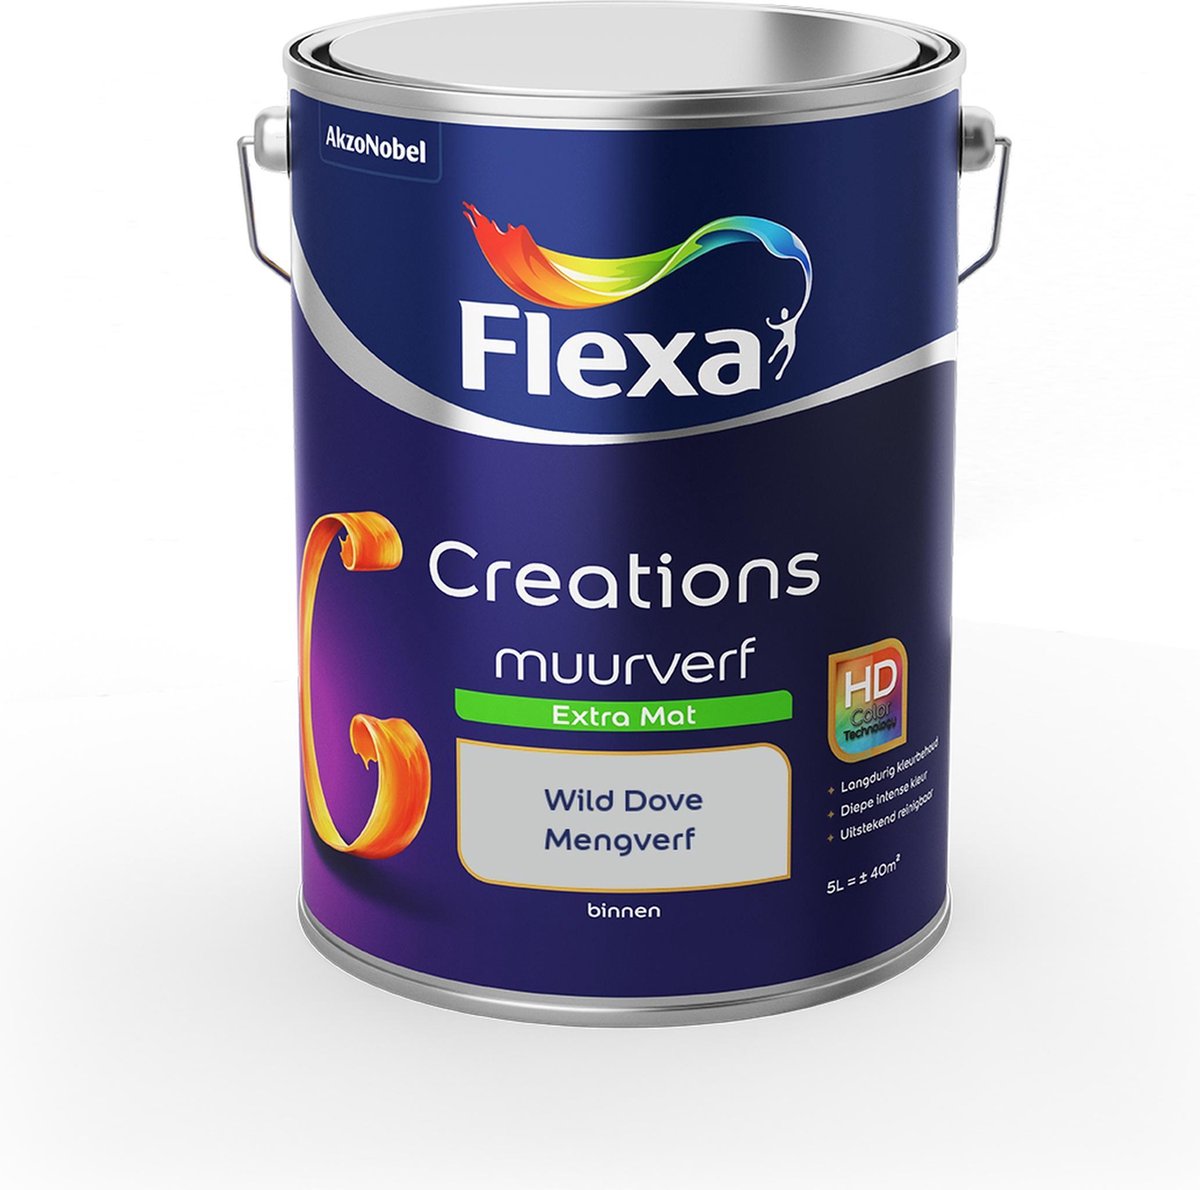 Flexa Creations - Muurverf Extra Mat - Wild Dove - Mengkleuren Collectie - 5 Liter